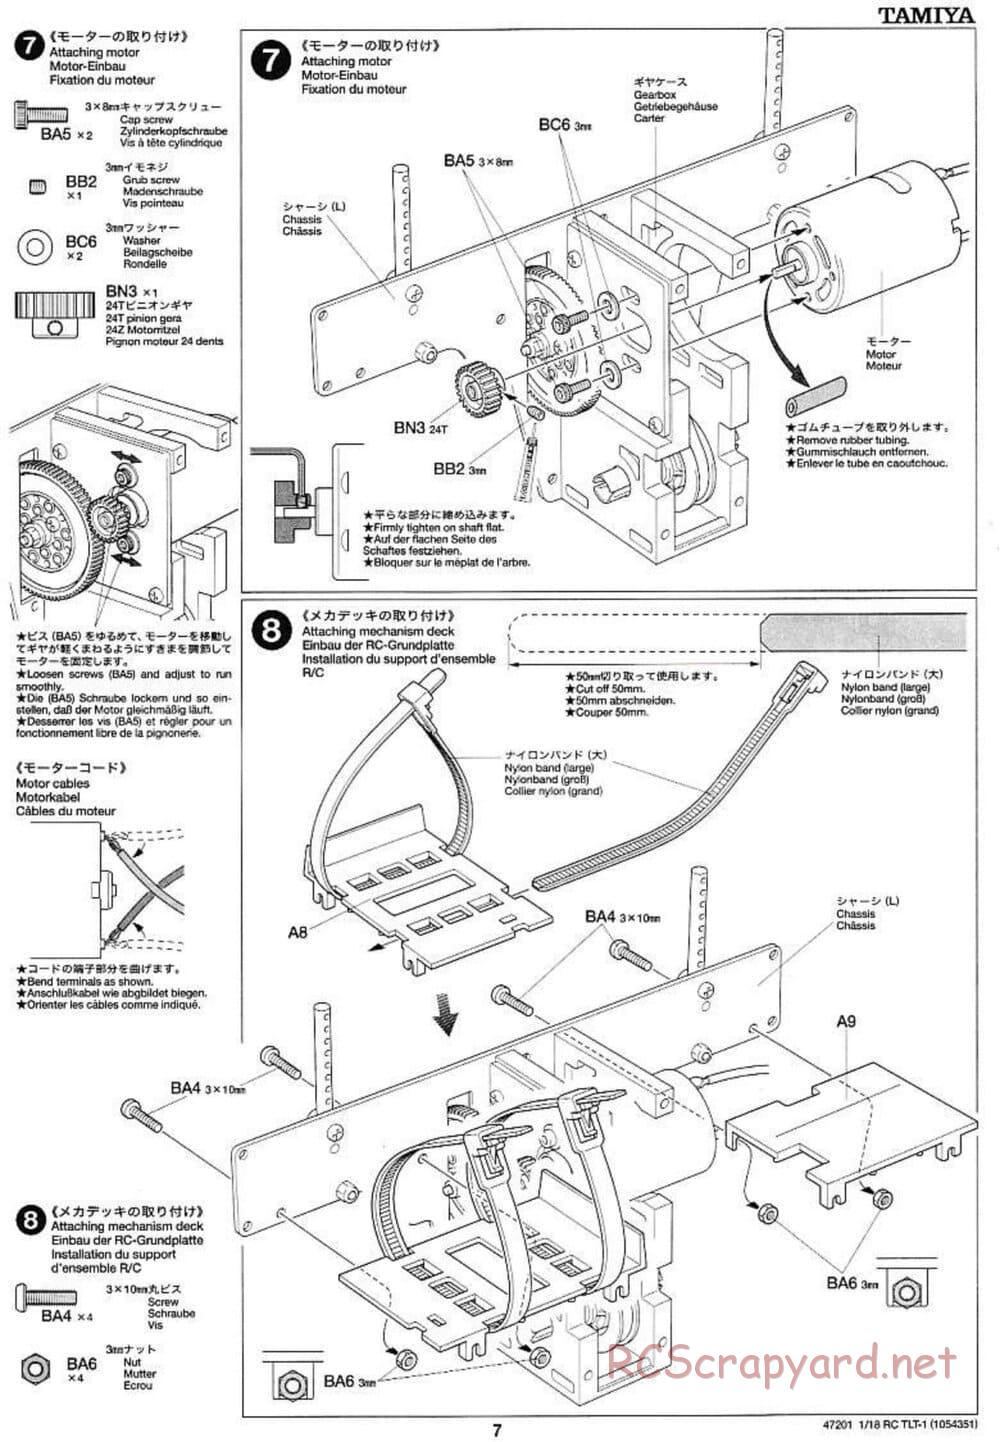 Tamiya - Rock Buster - TLT-1 Chassis - Manual - Page 7